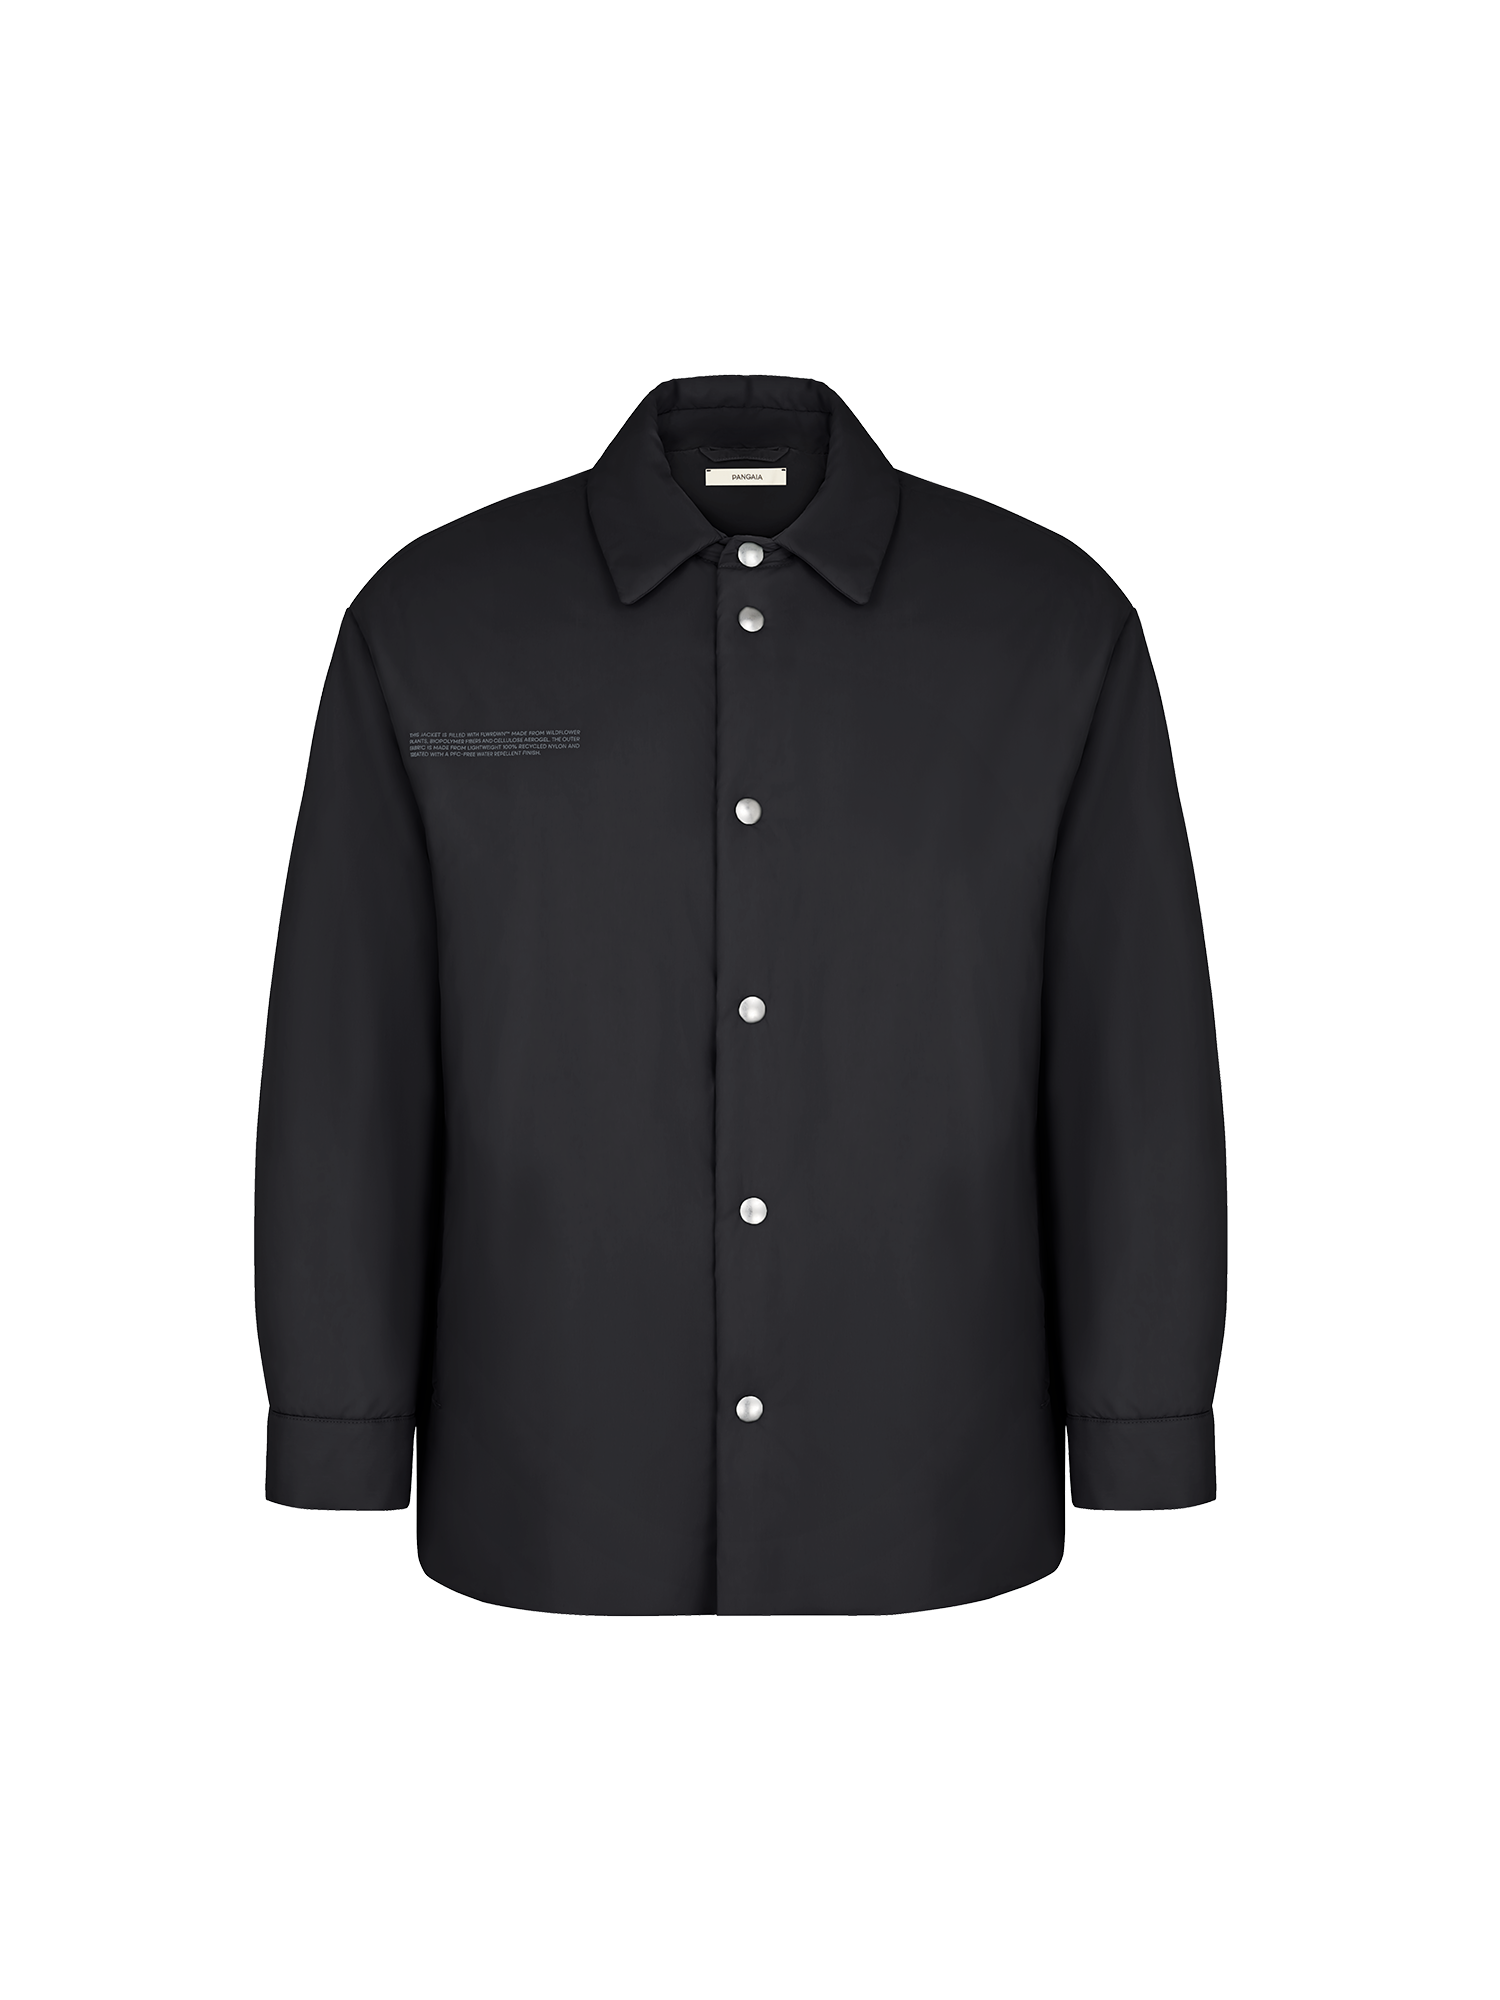 FLWRFLL_Unisex_Shirt_Black-packshot-5